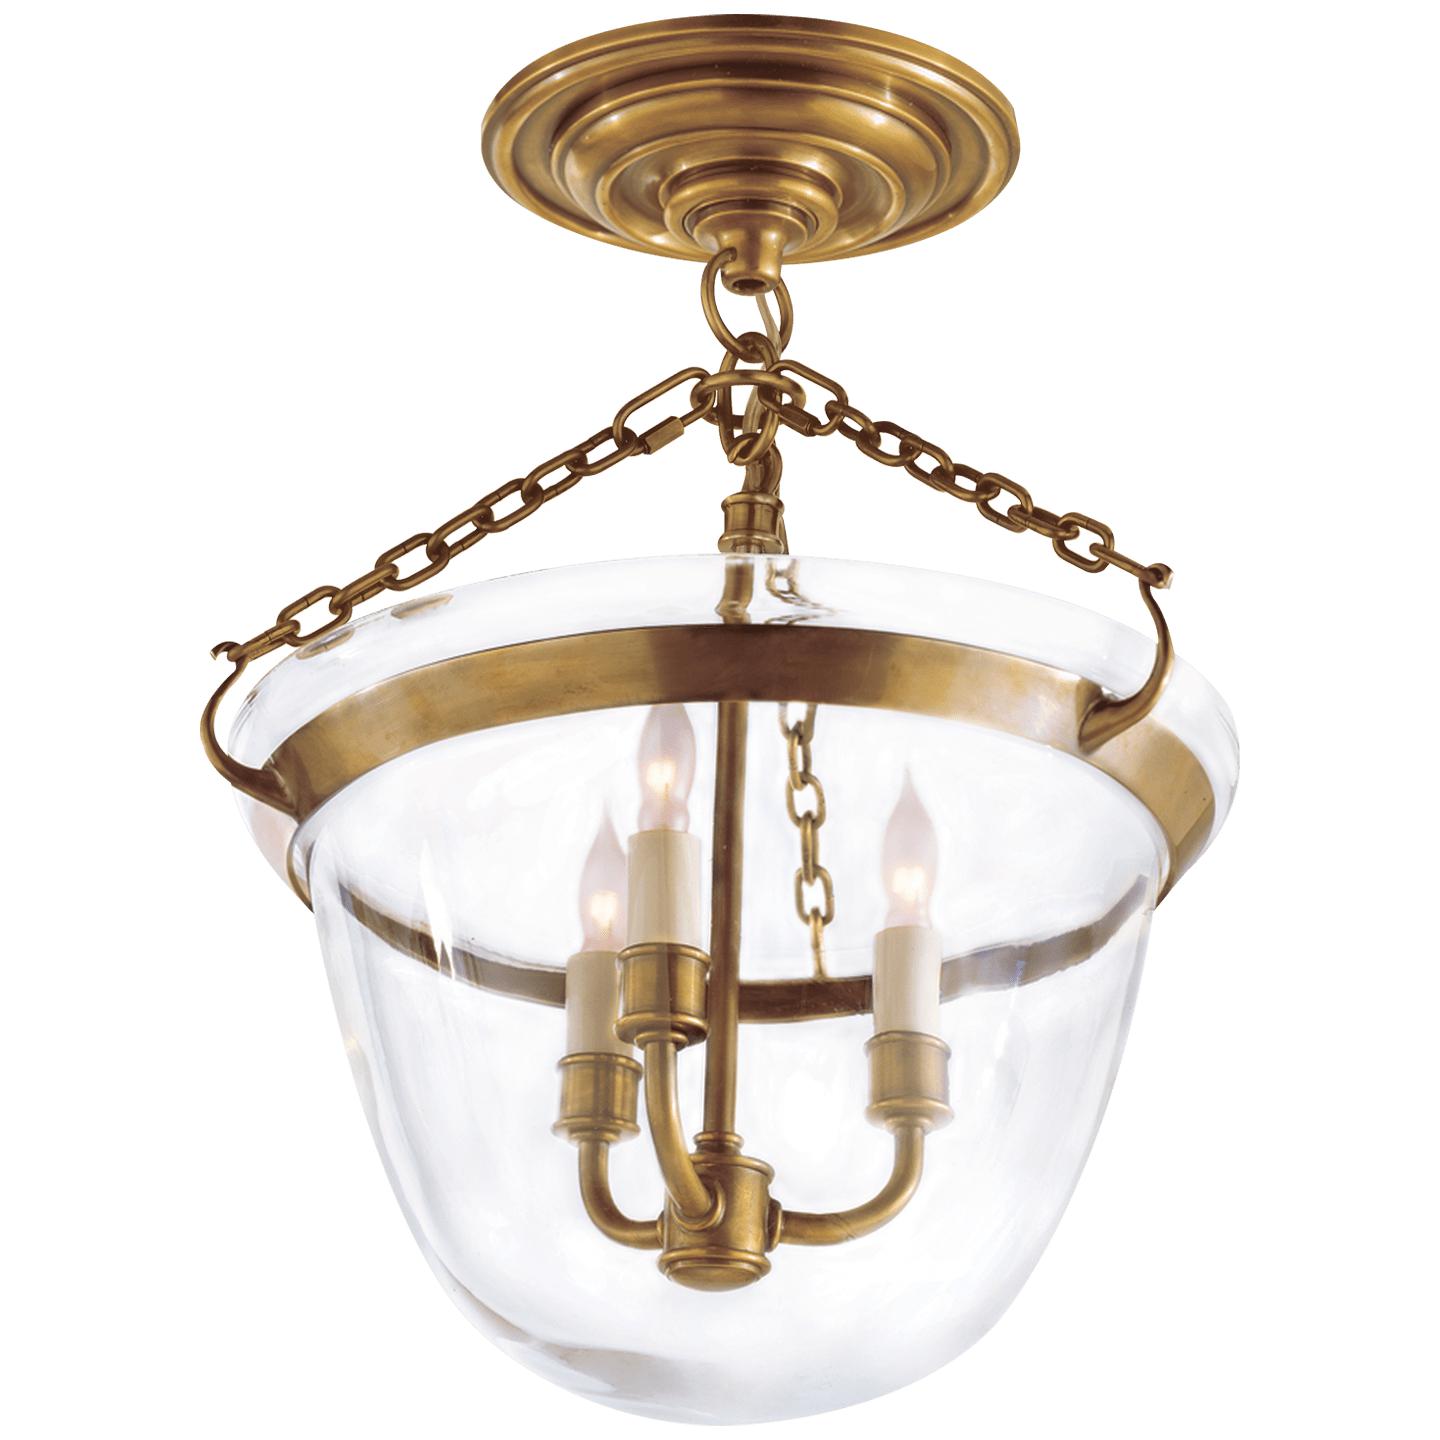 Купить Накладной светильник/Подвесной светильник Country Semi-Flush Bell Jar Lantern в интернет-магазине roooms.ru